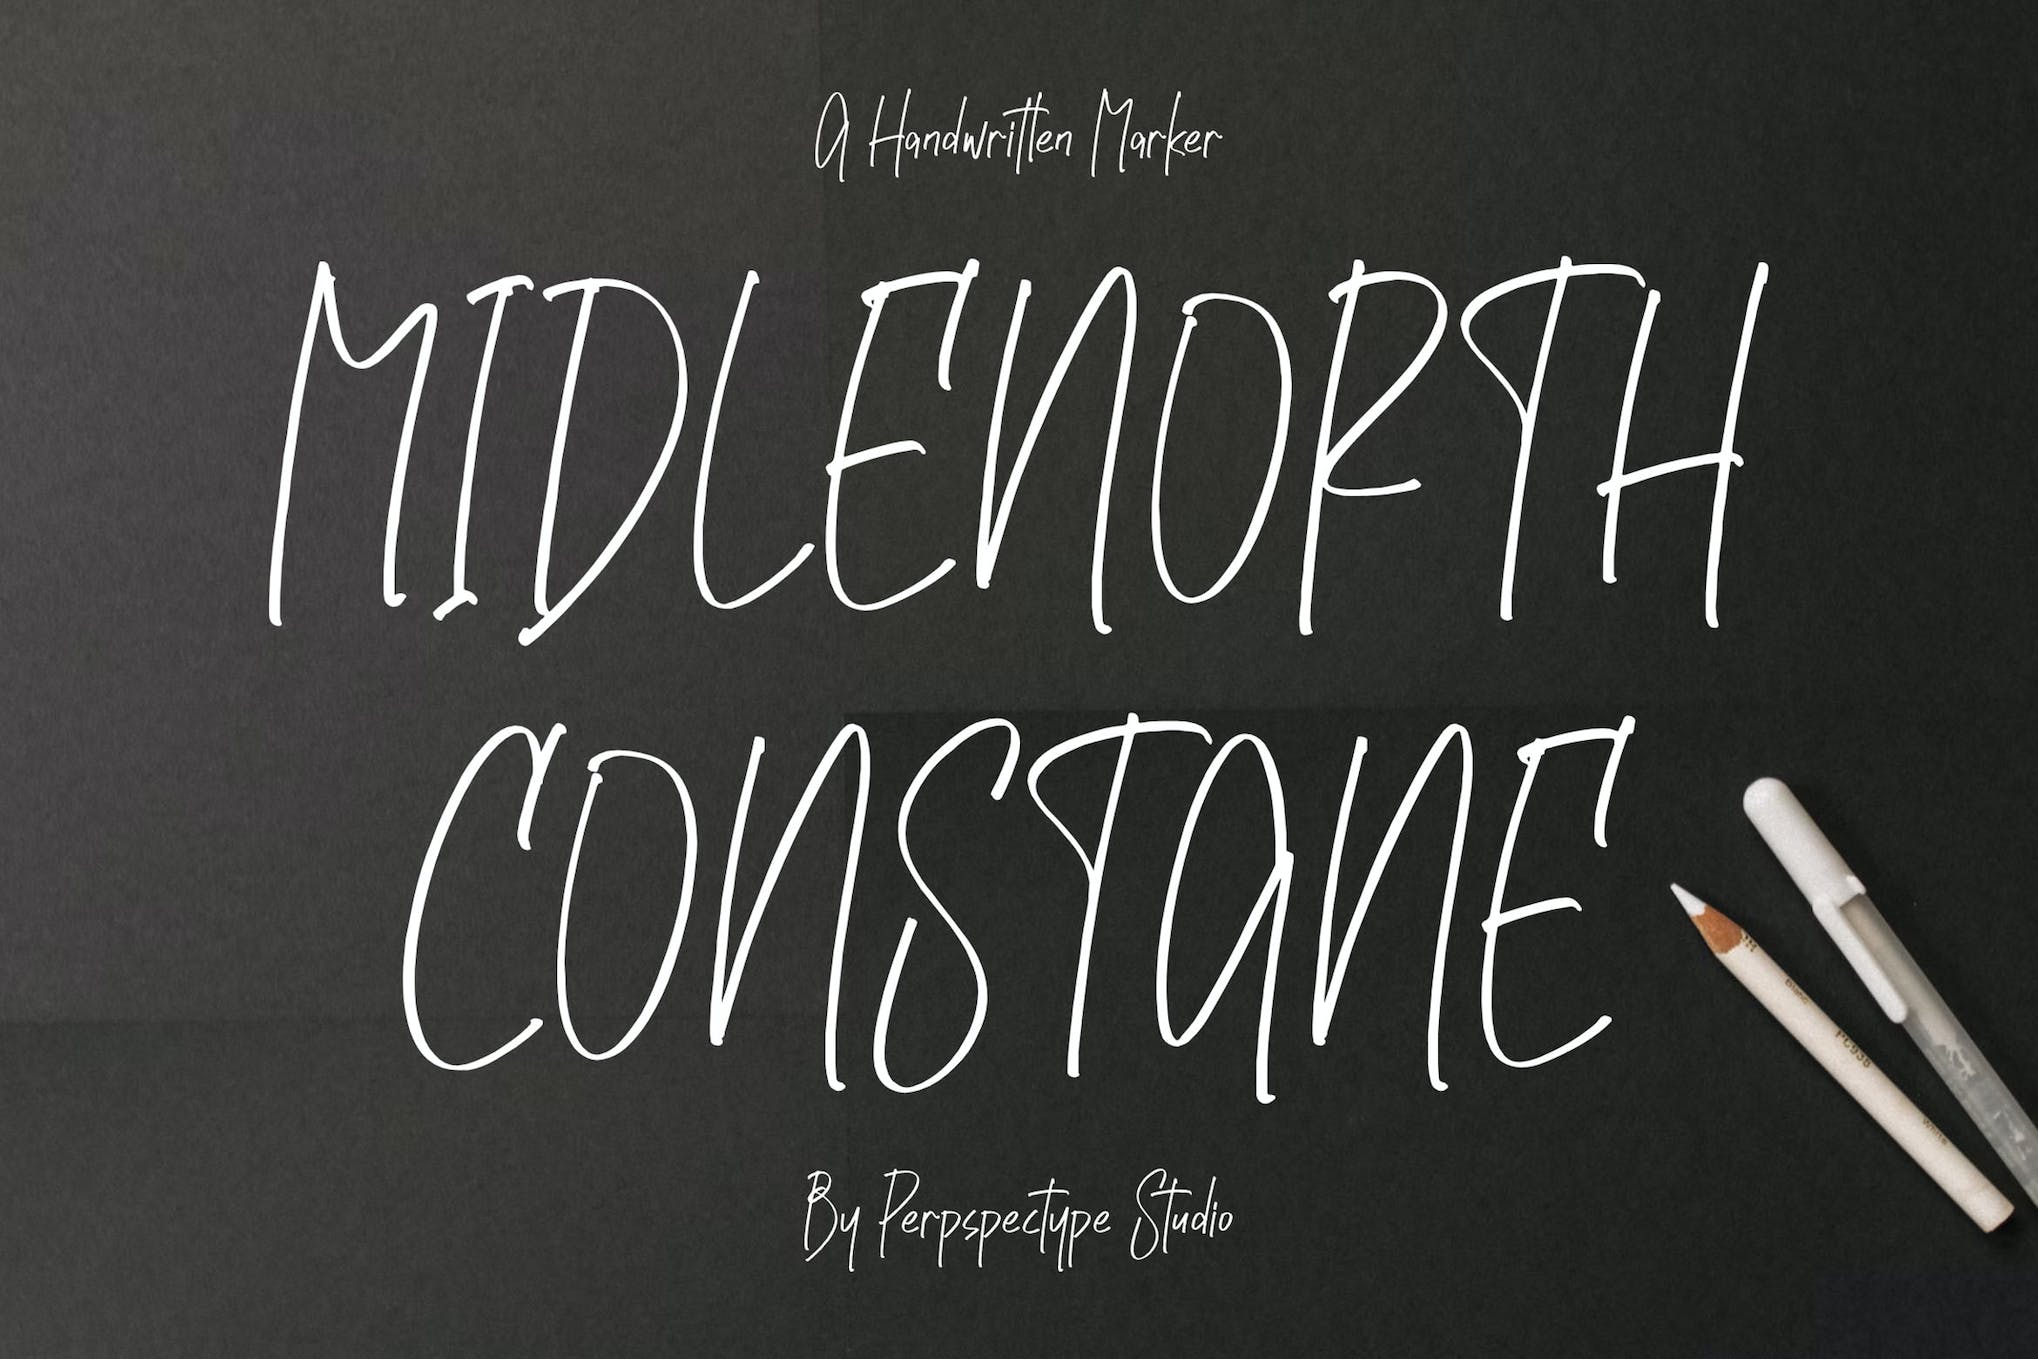 Midlenorth Constane - Handwritten Marker Font